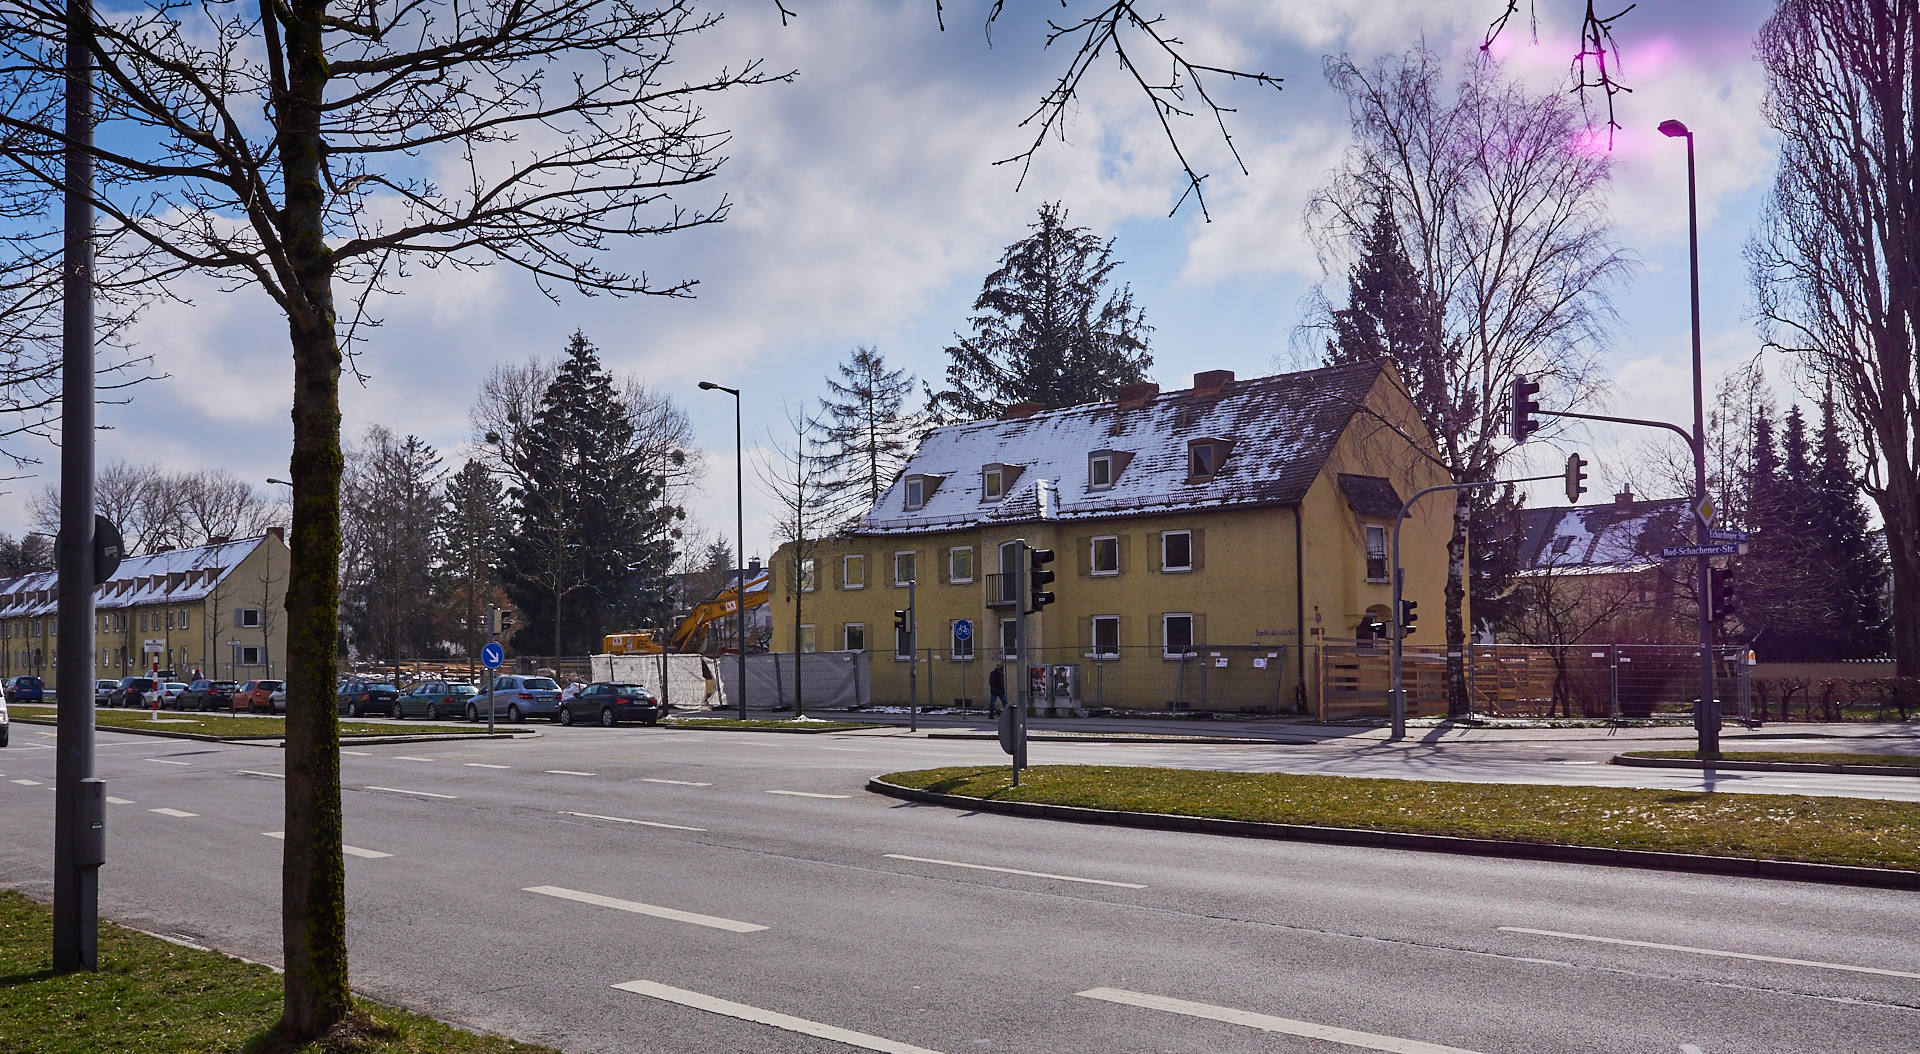 Neuperlach-maikaefersiedlung am 16.03.2016